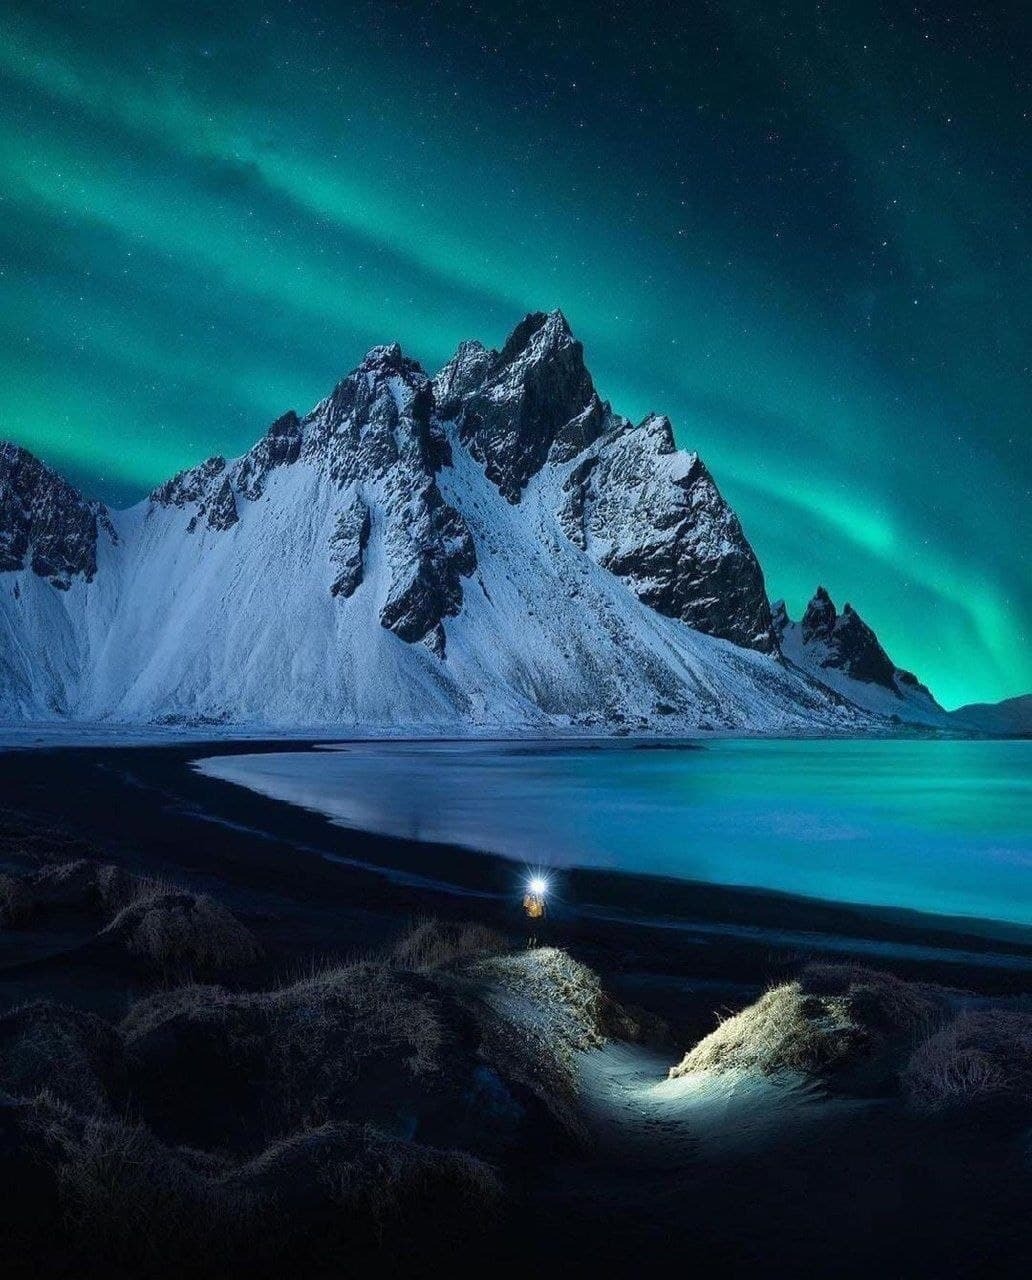 تصاویر دیدنی از پدیده زیبای شفق قطبی